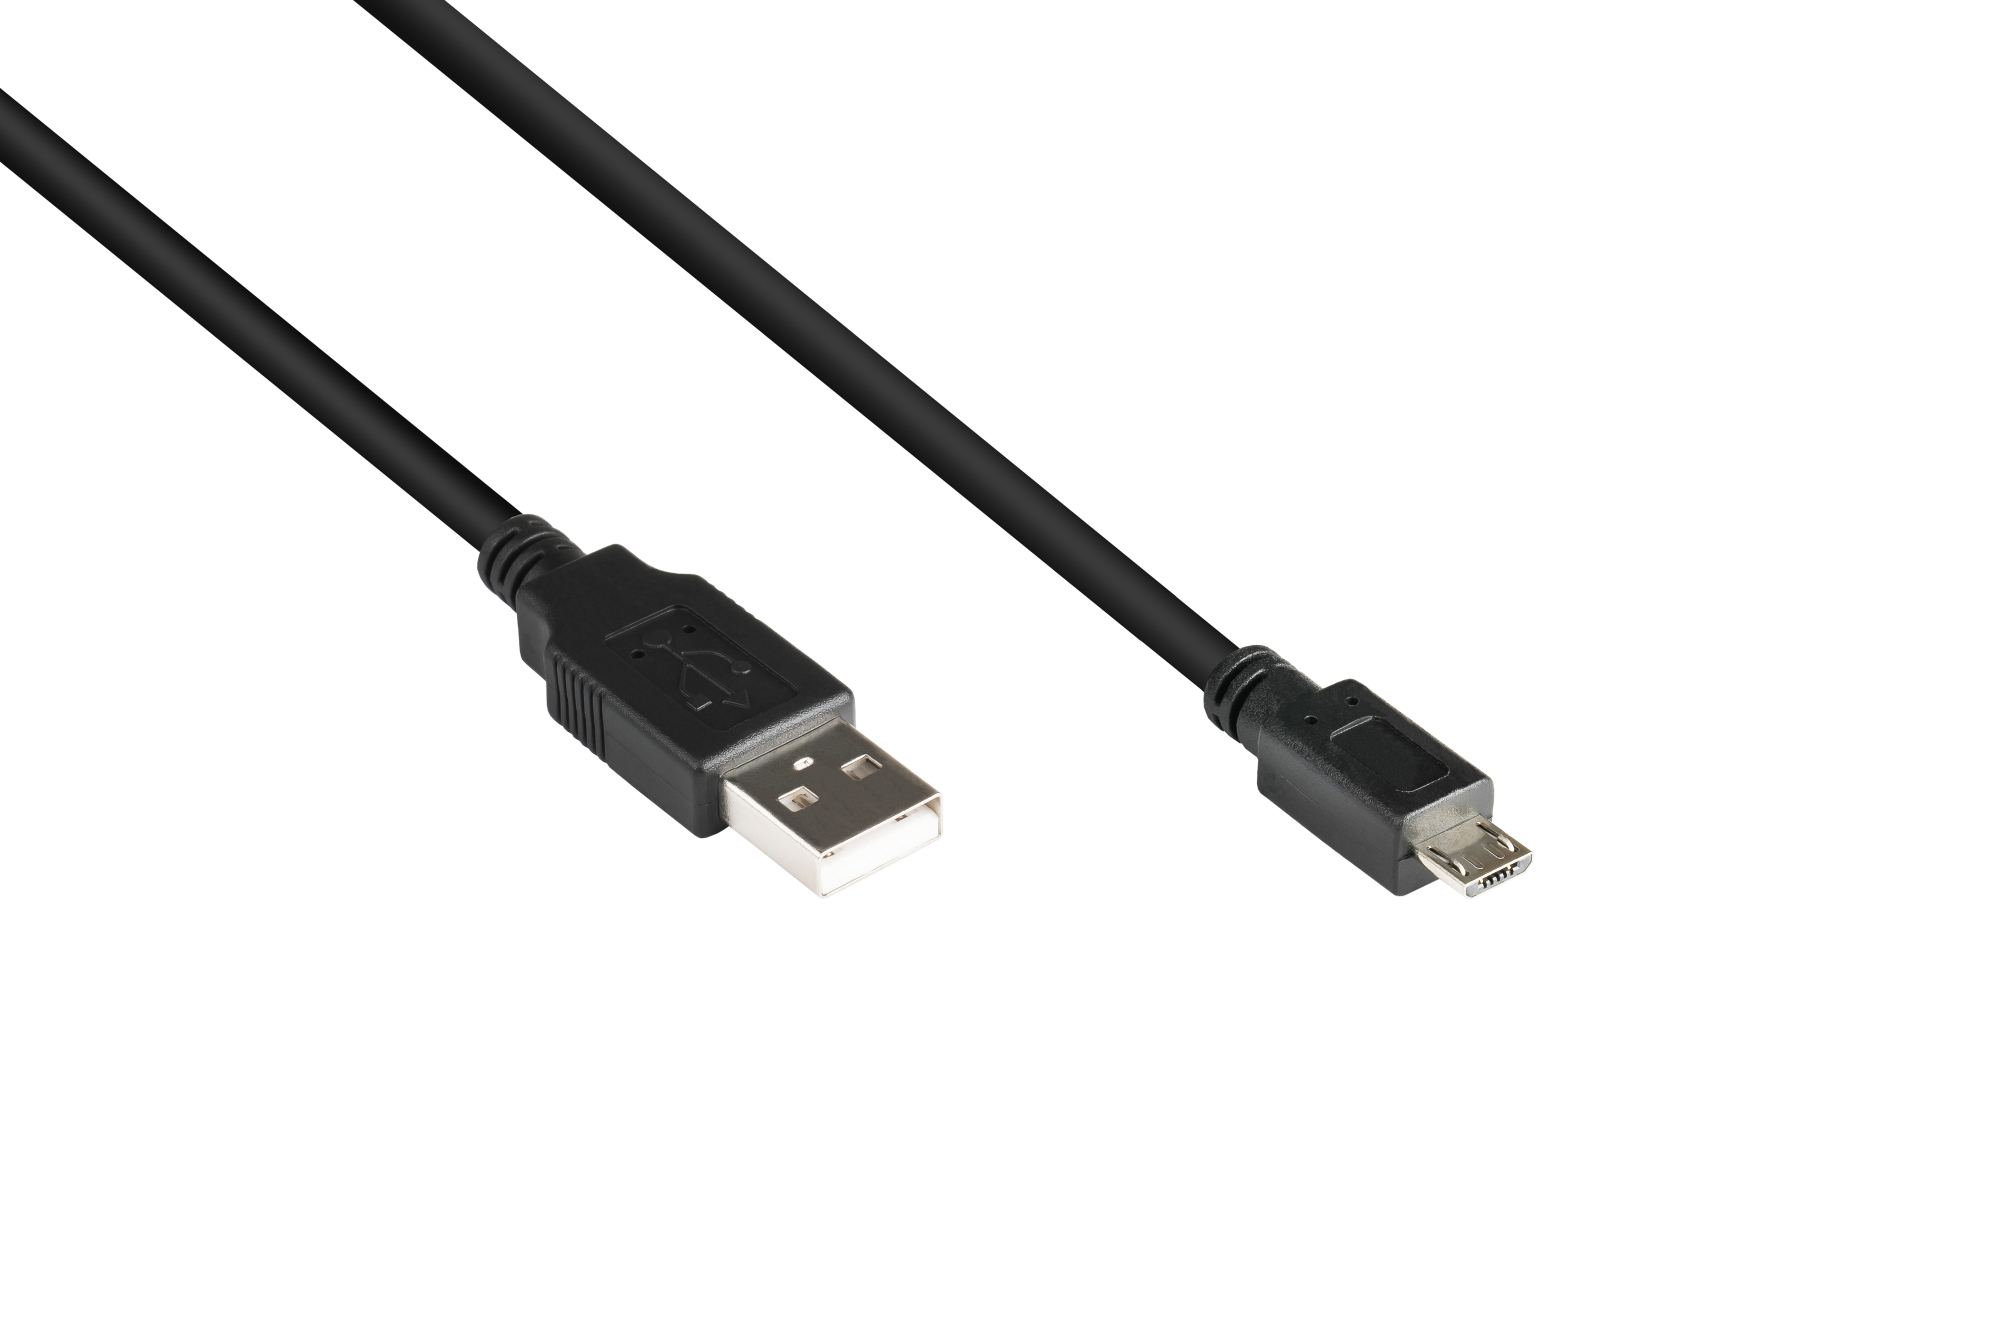 Anschlusskabel USB 2.0 Stecker A an Stecker Micro B, schwarz, 3m, Good Connections®